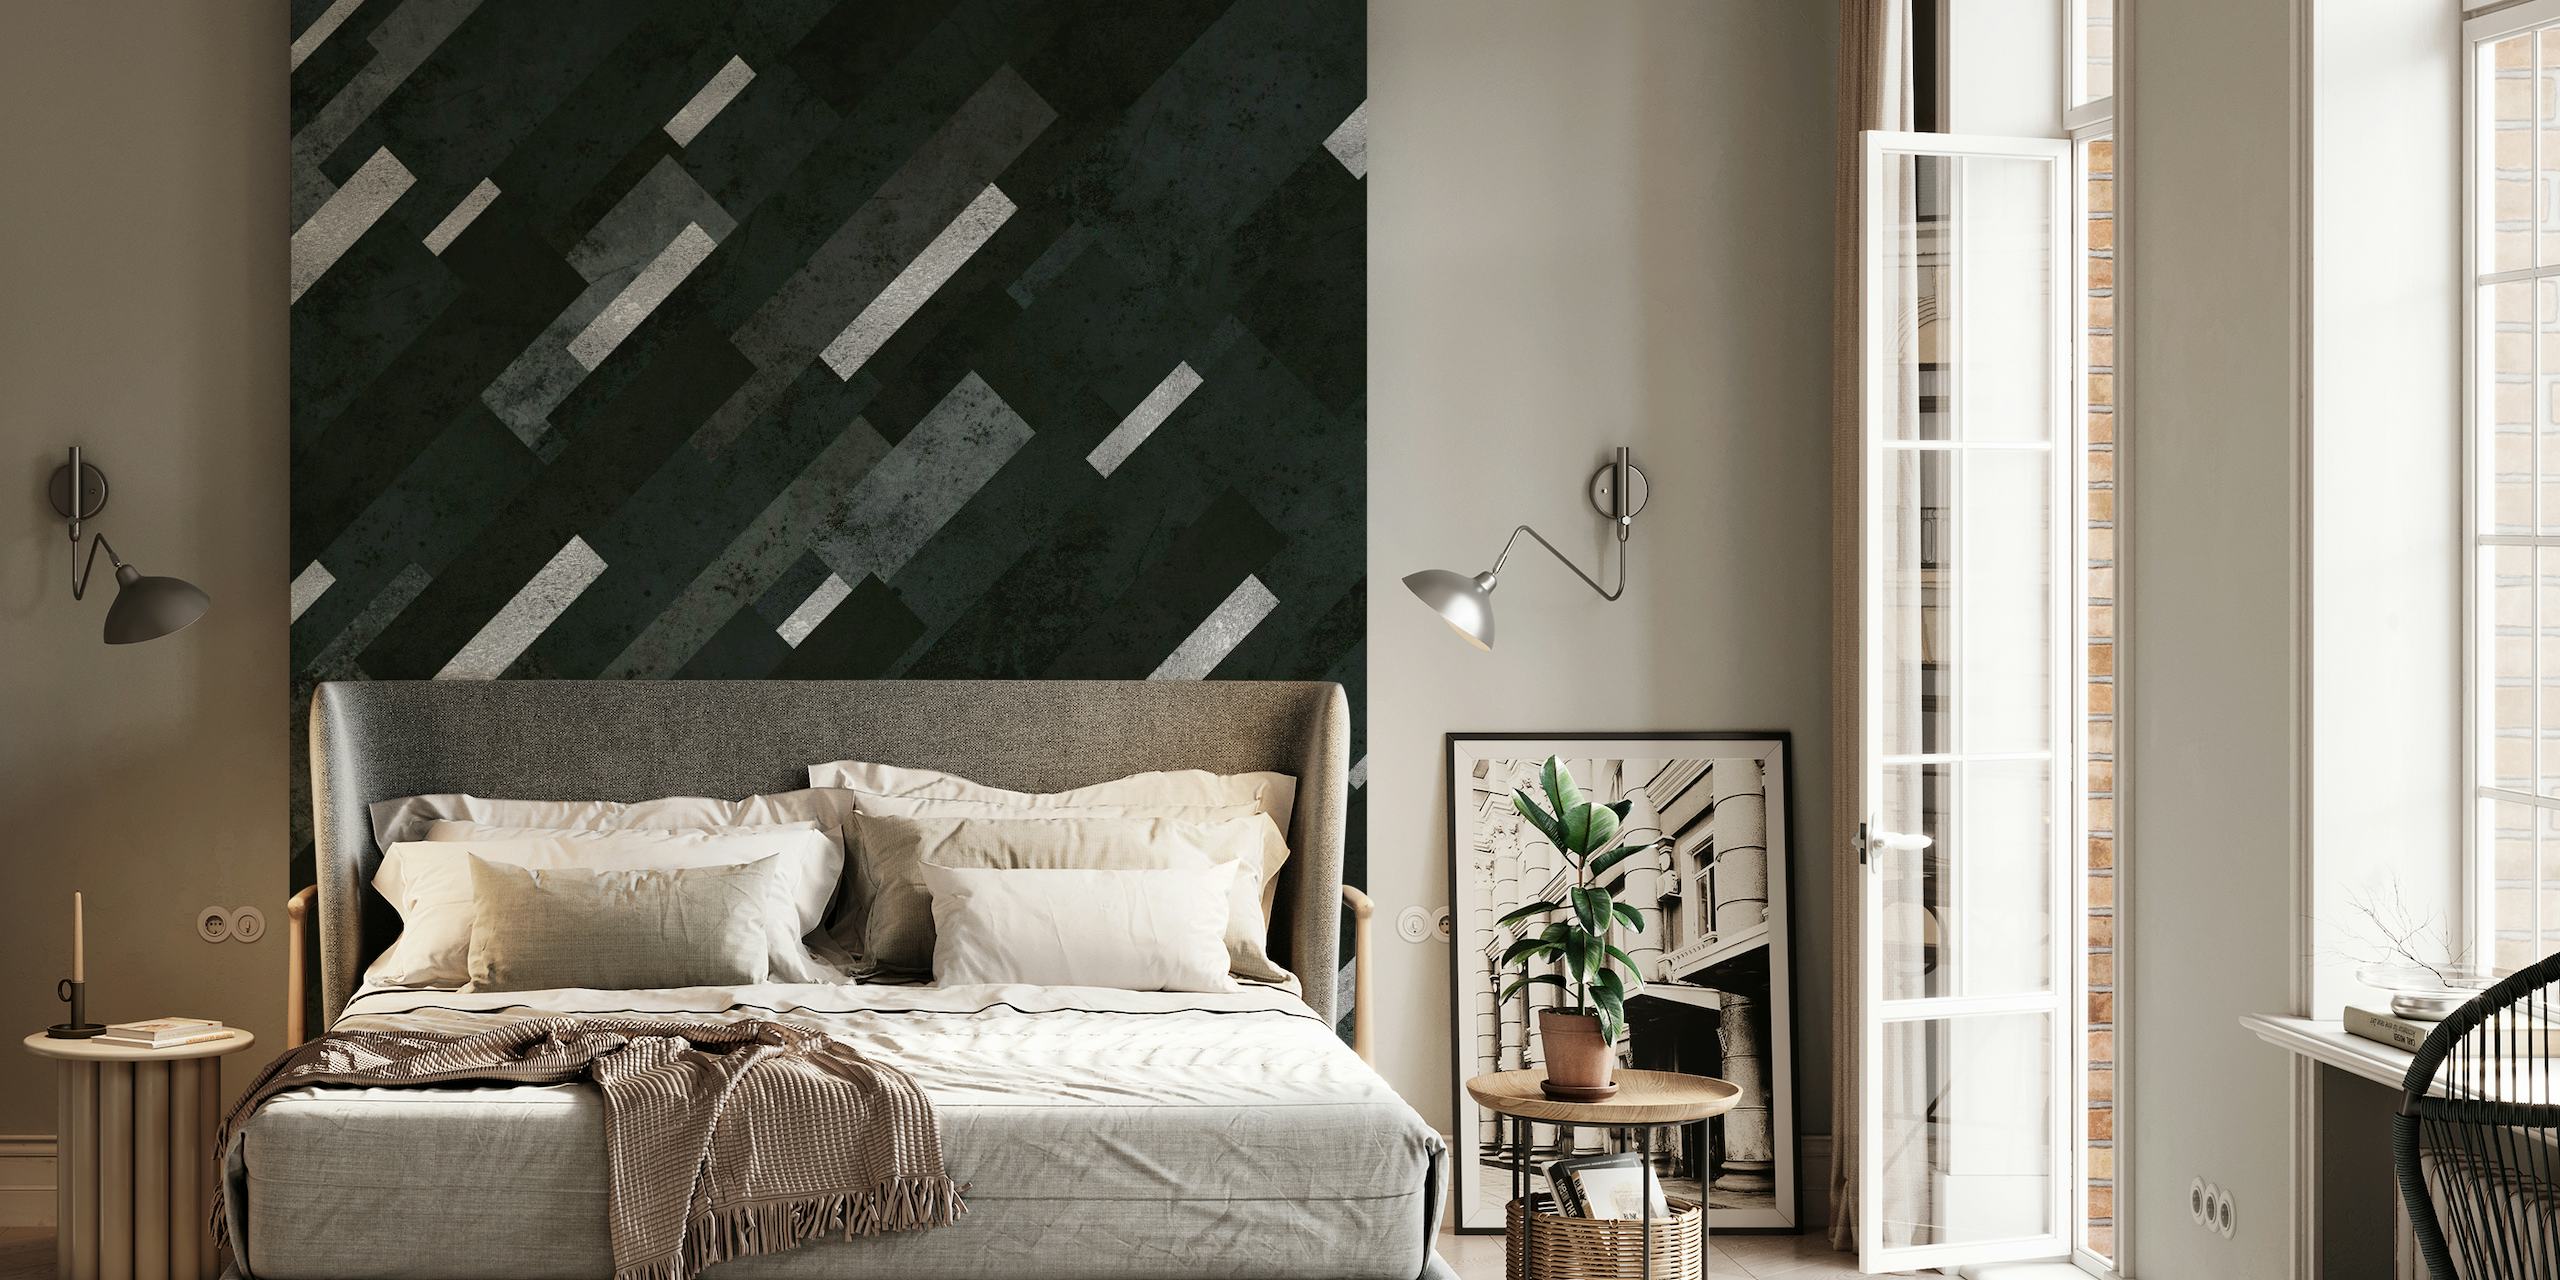 Muurschildering met abstract grijs houtskoolgelaagd geometrisch patroon